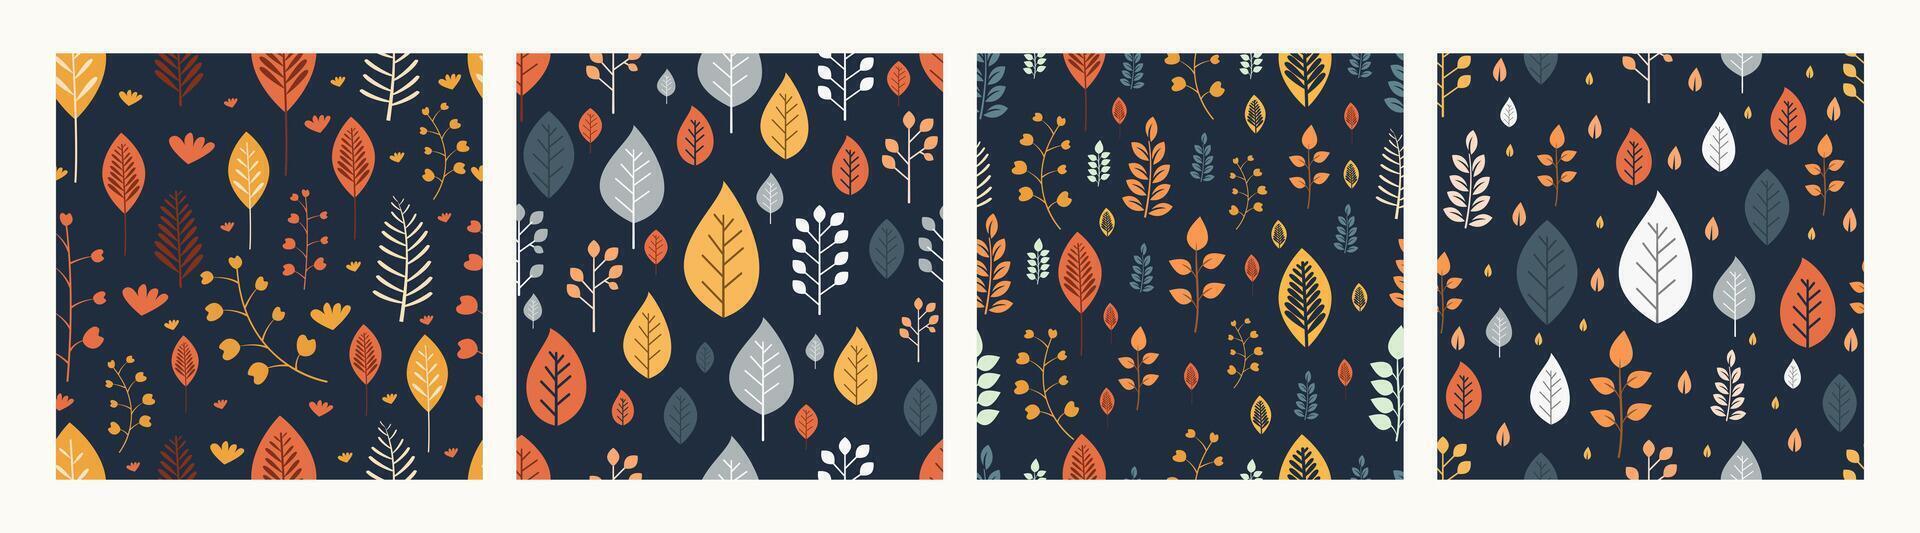 verzameling van patroon herfst bladeren en bloemen thema, ontwerp kan worden voor t-shirts, omhulsel papier, het drukken behoeften vector